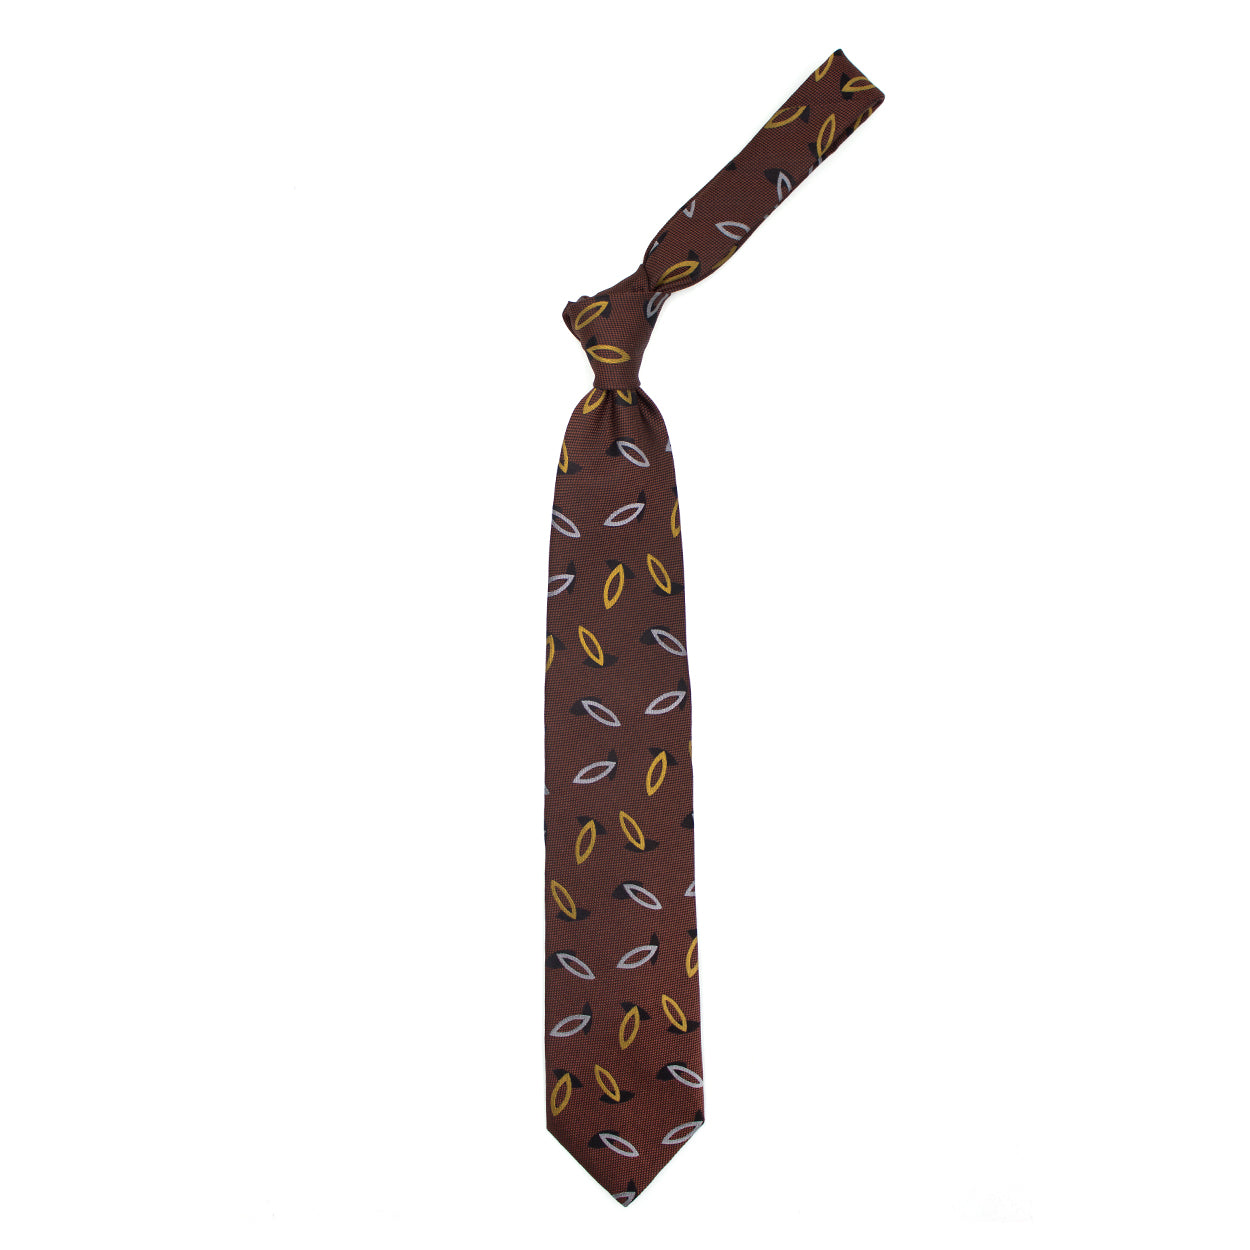 Cravatta ruggine con disegni grigi, gialli e neri